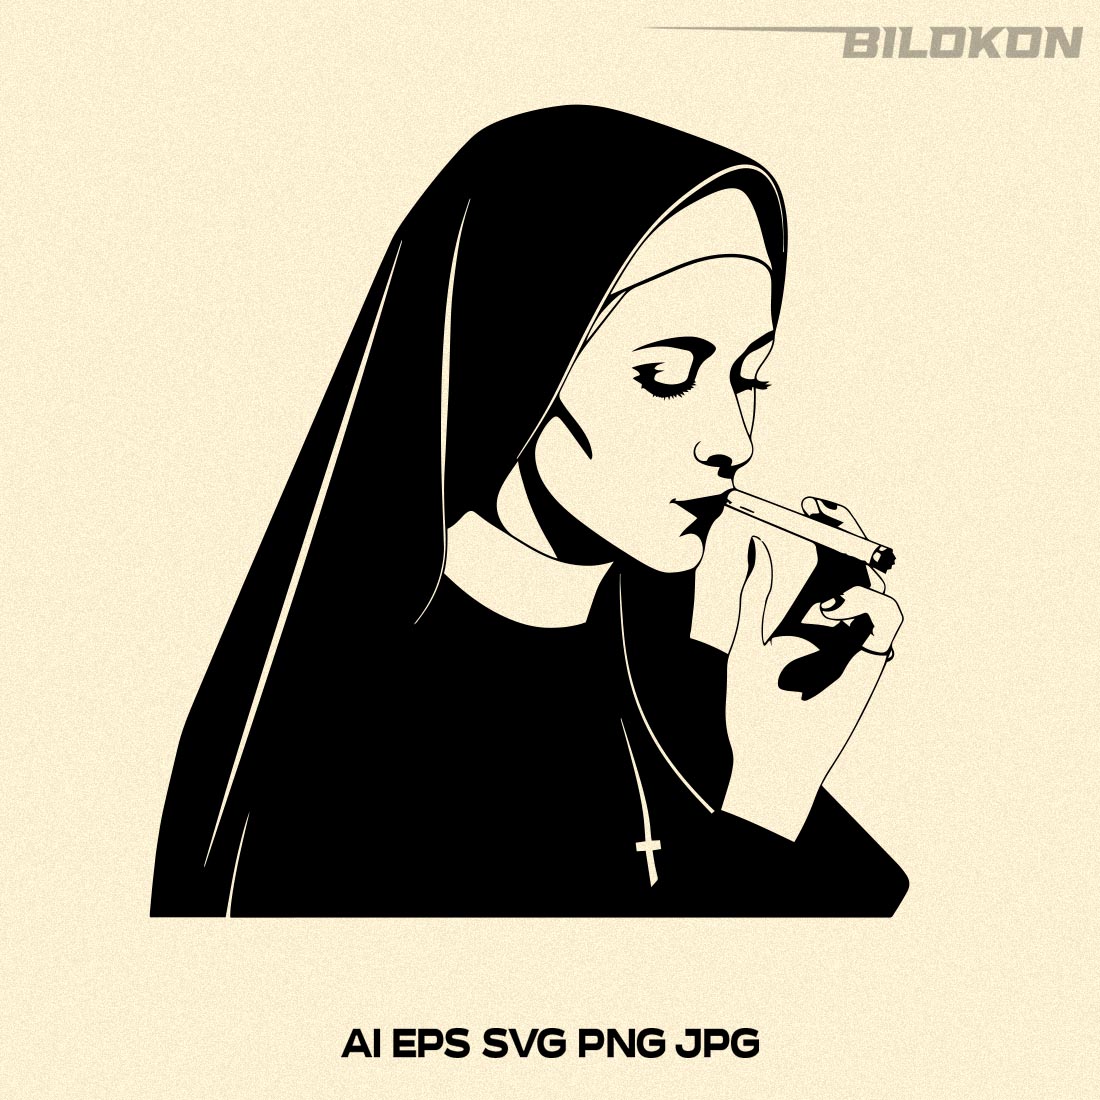 Nun Smoking, Bad Nun SVG Vector cover image.